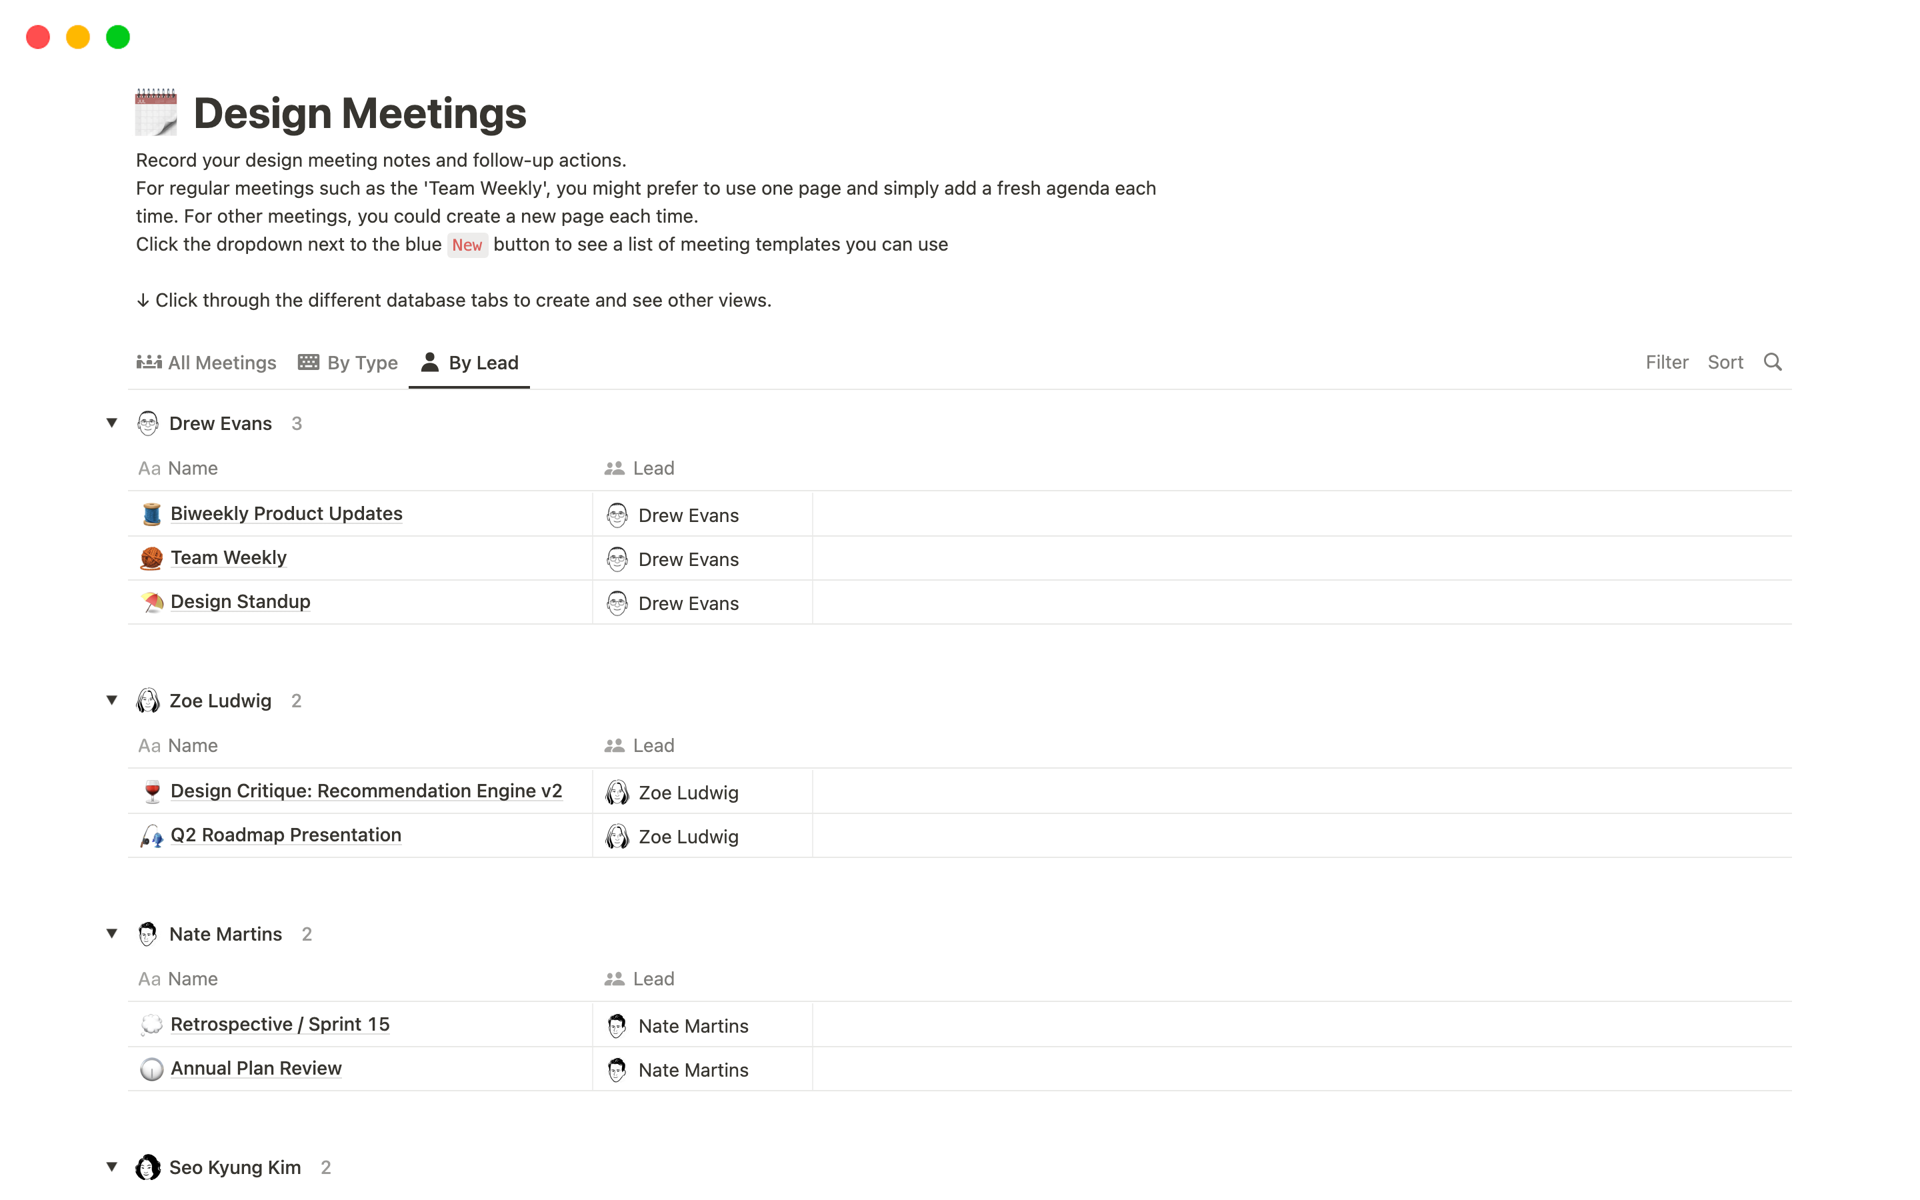 Ein komplettes Set von Vorlagen für alle deine Design-Meeting-Bedürfnisse.